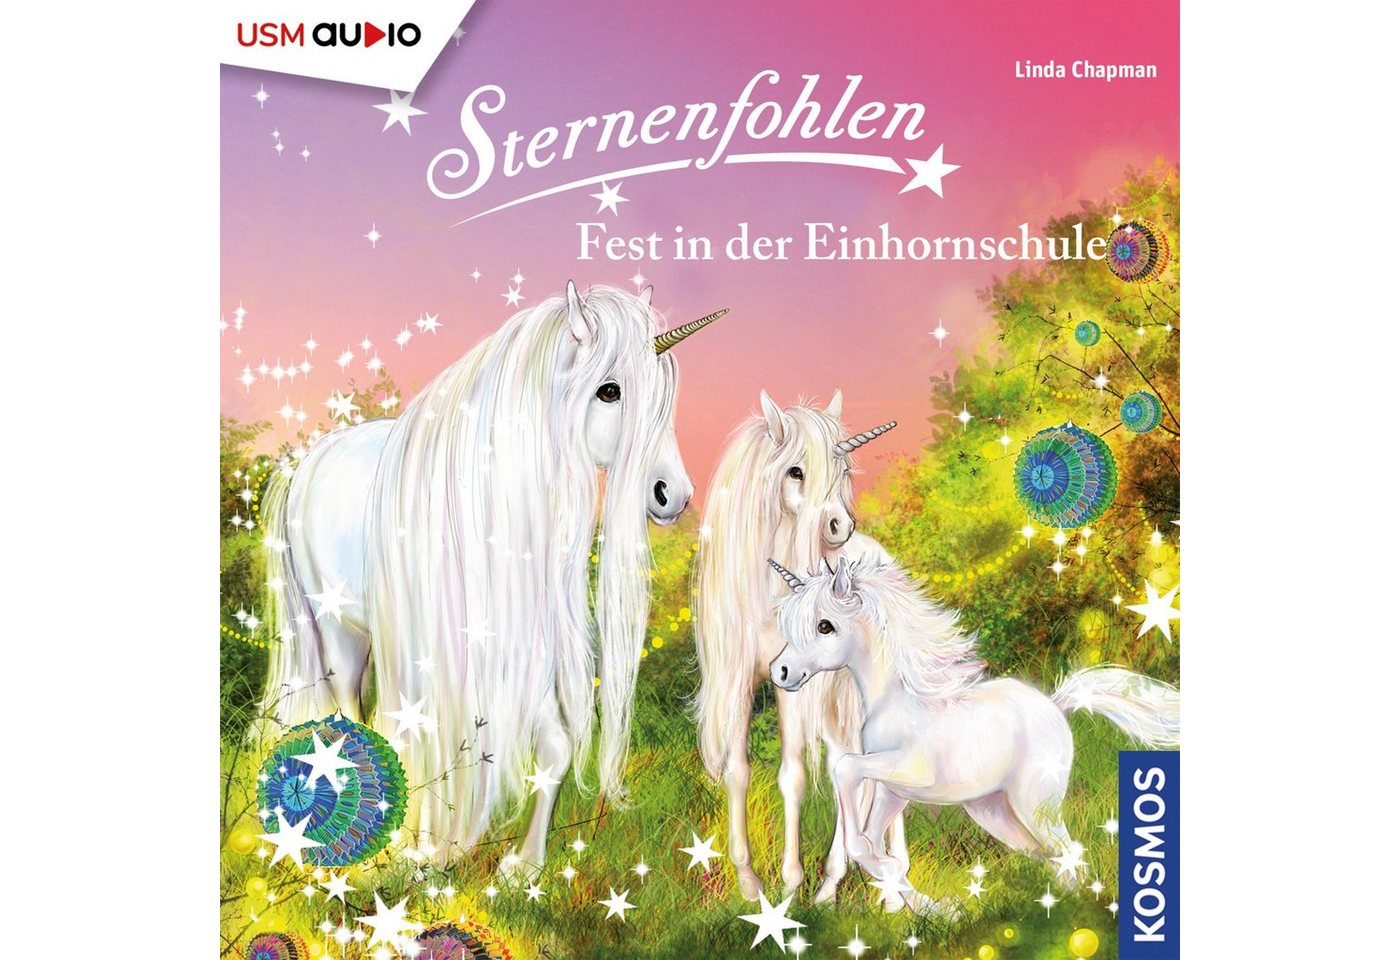 USM Hörspiel-CD Sternenfohlen 25 - Fest in der Einhornschule von USM